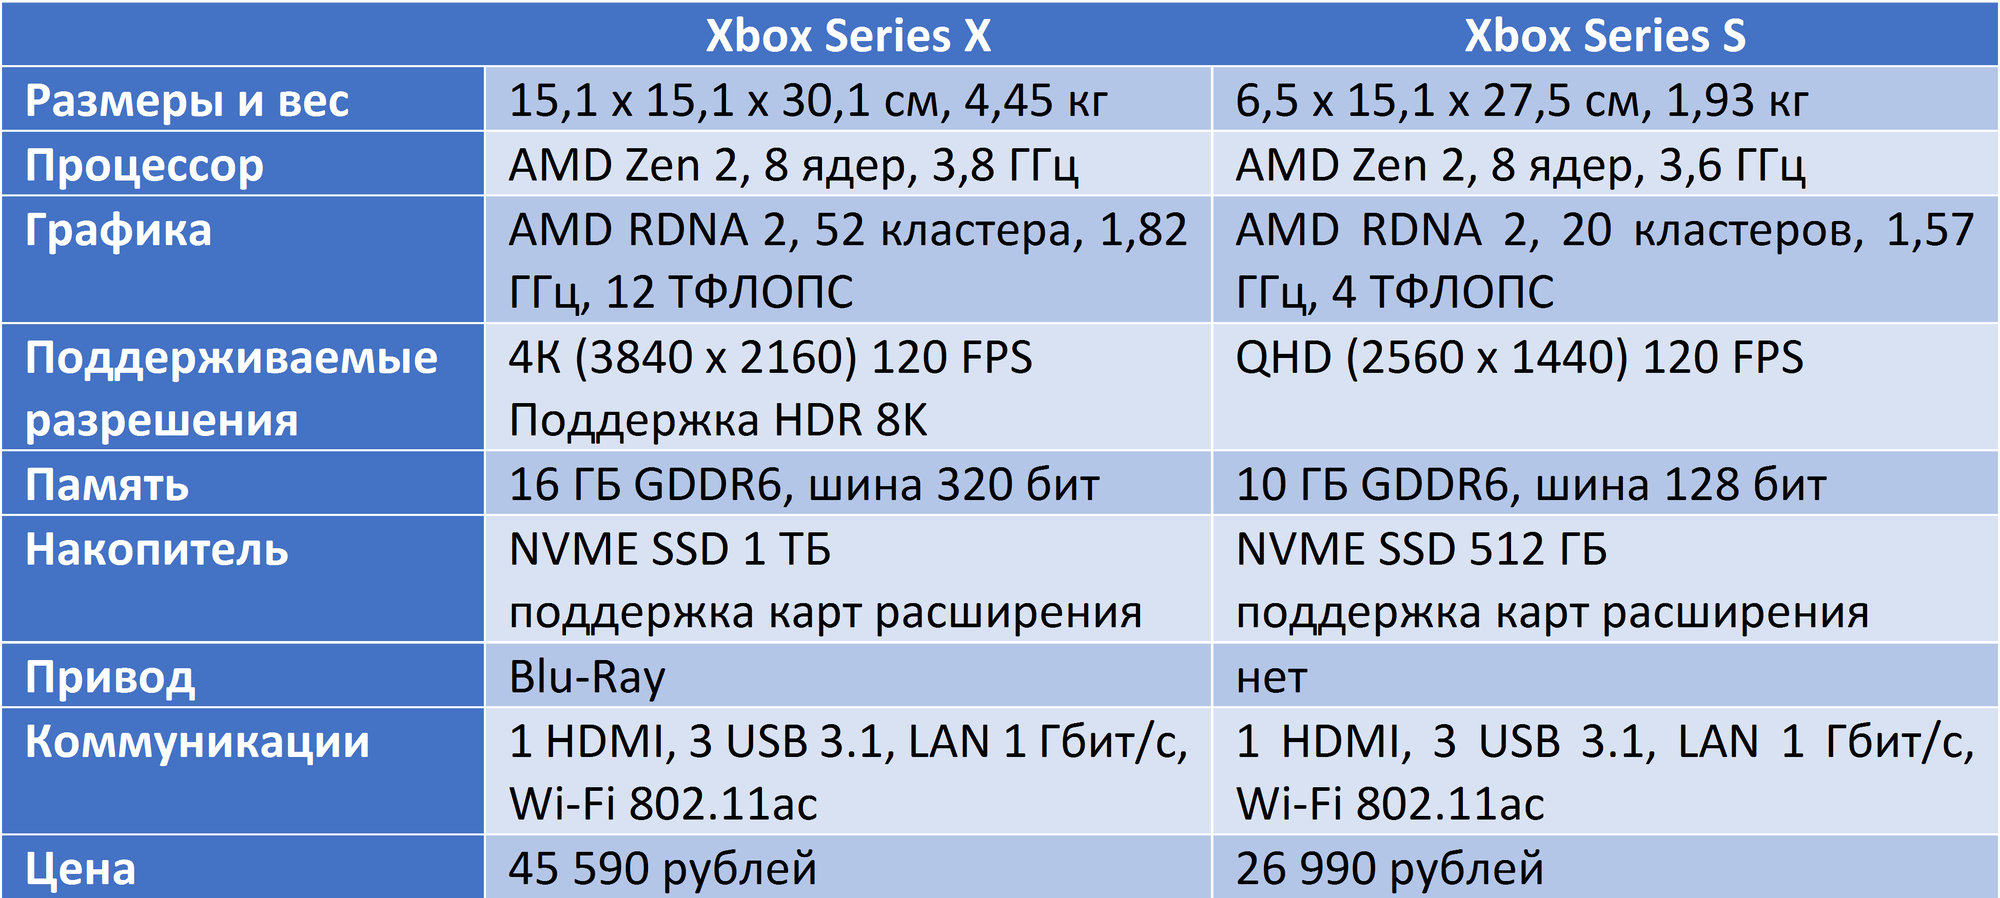 Xbox one x характеристики железа. Xbox Series 1s характеристики. Сравнение характеристик Xbox. Характеристики консолей Xbox. Xbox series s x сравнение